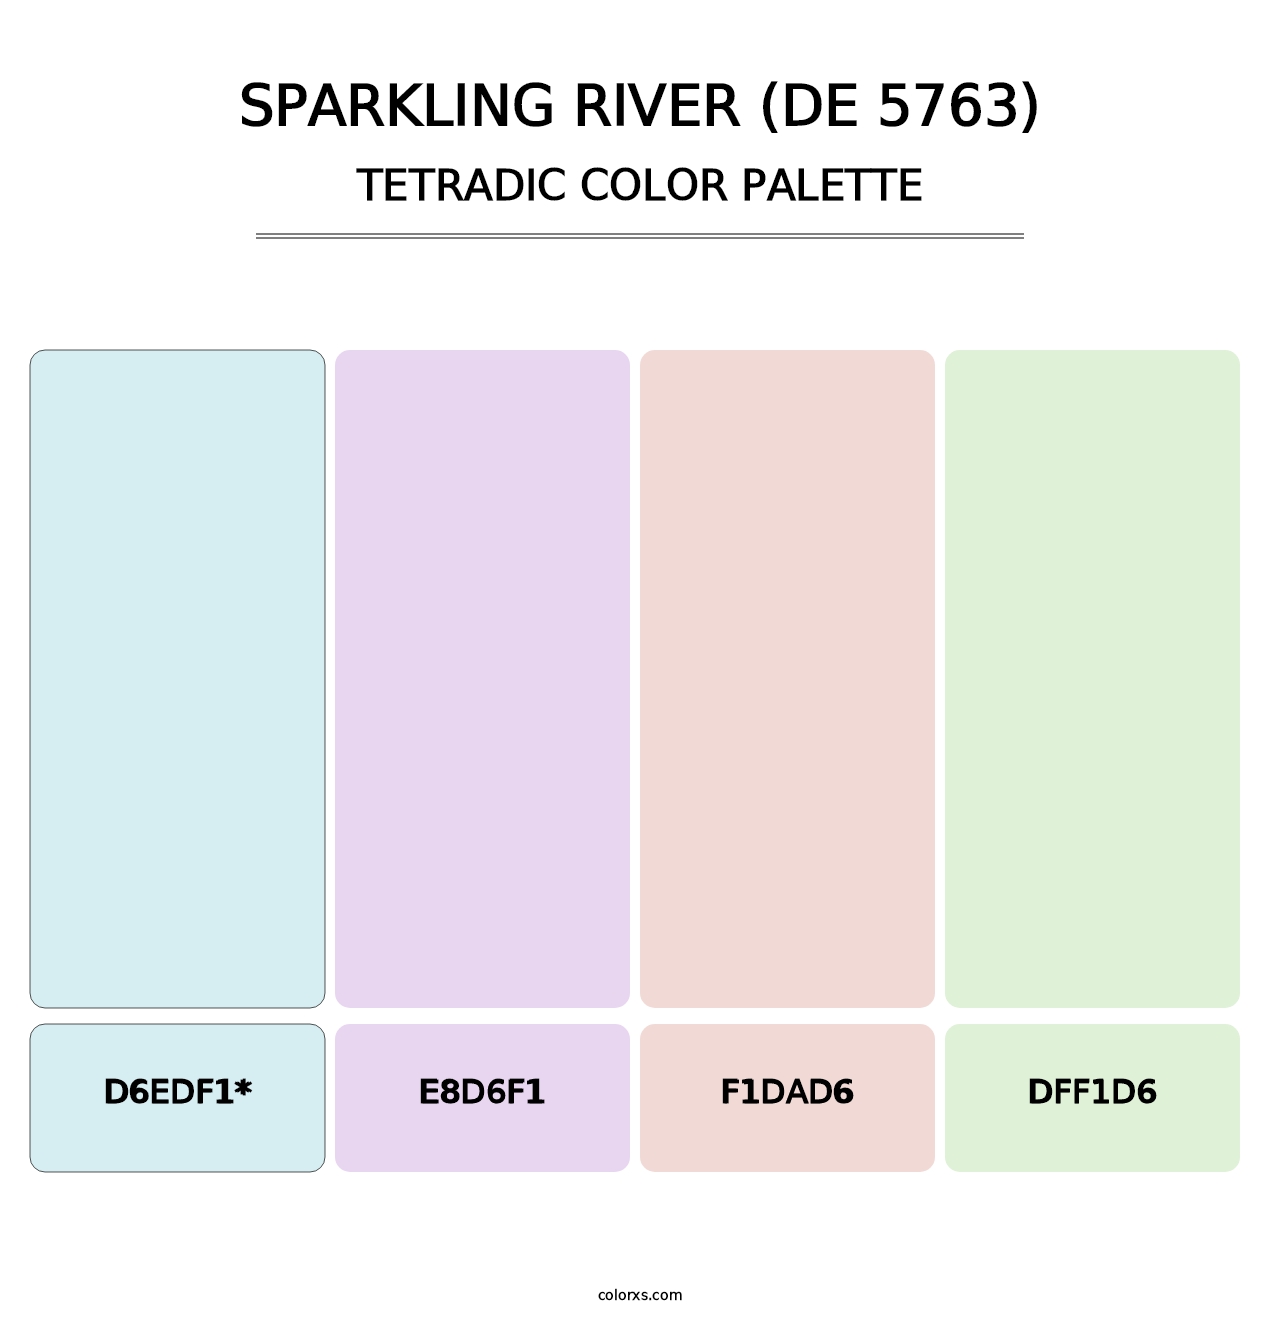 Sparkling River (DE 5763) - Tetradic Color Palette